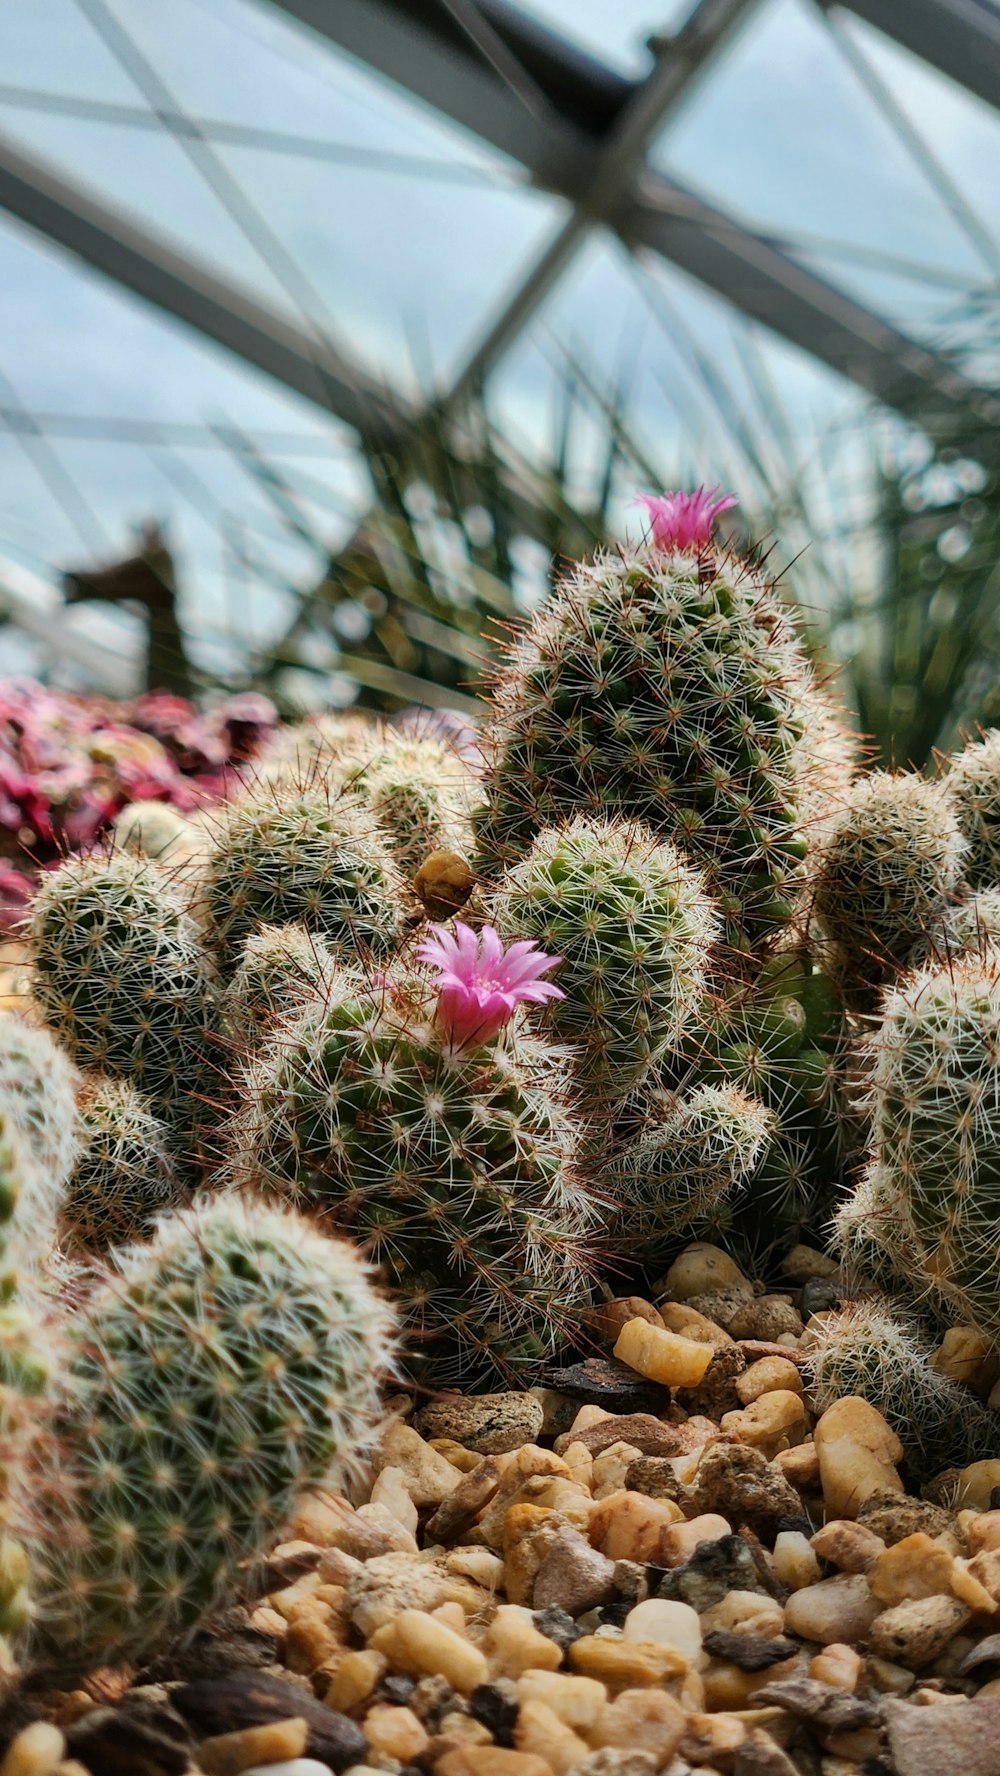 a cactus in a garden